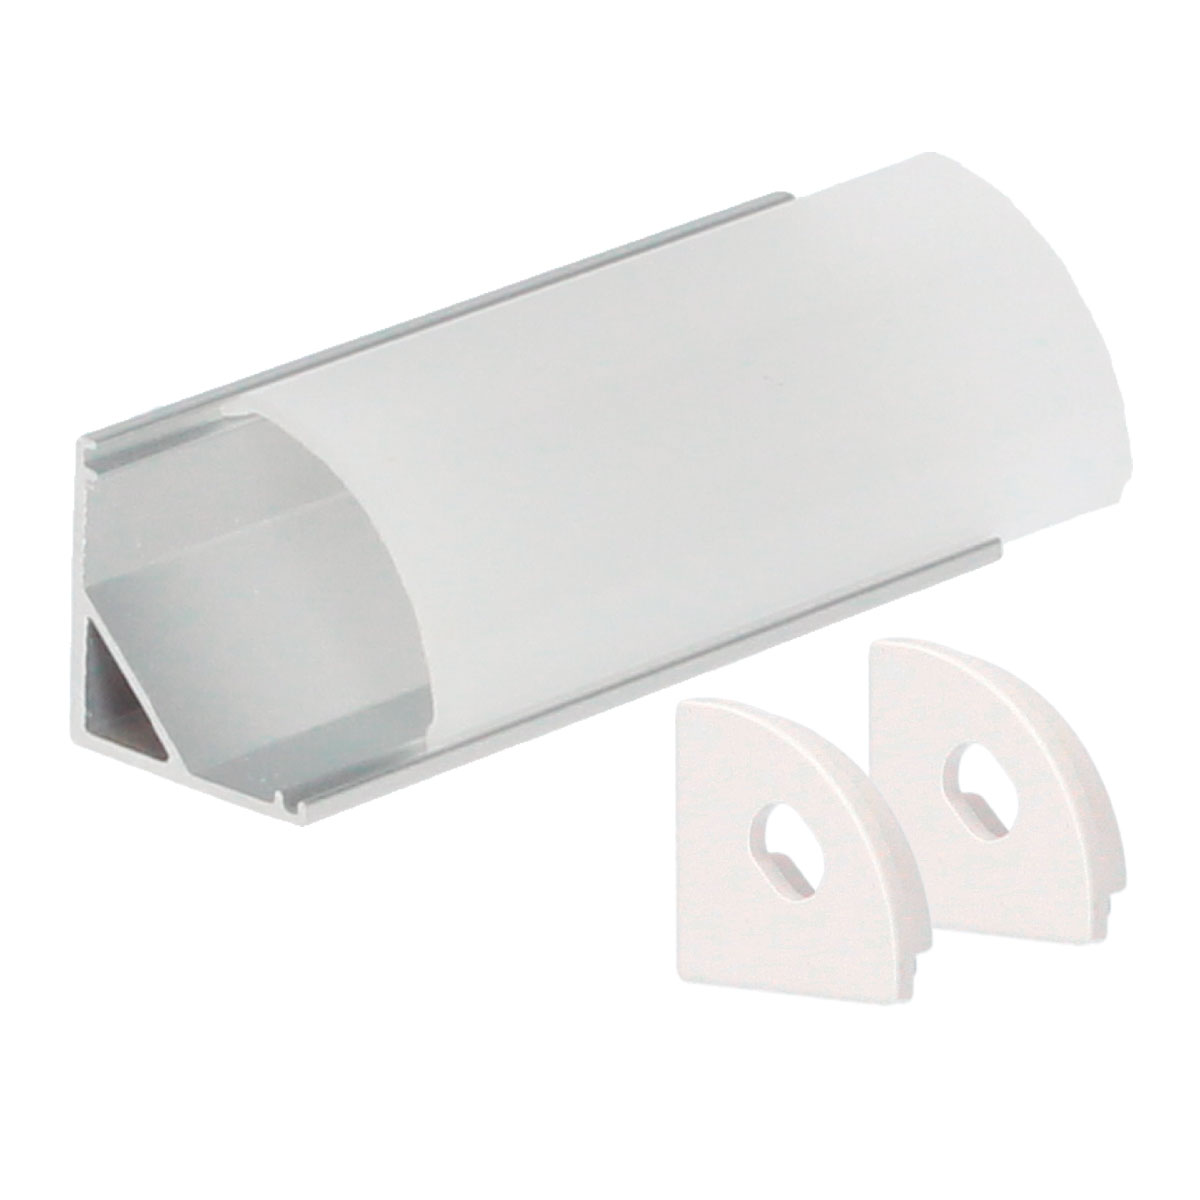 Kit profil aluminium translucide pour angles ovale 2 M pour bandes LED jusqu'à 10 mm